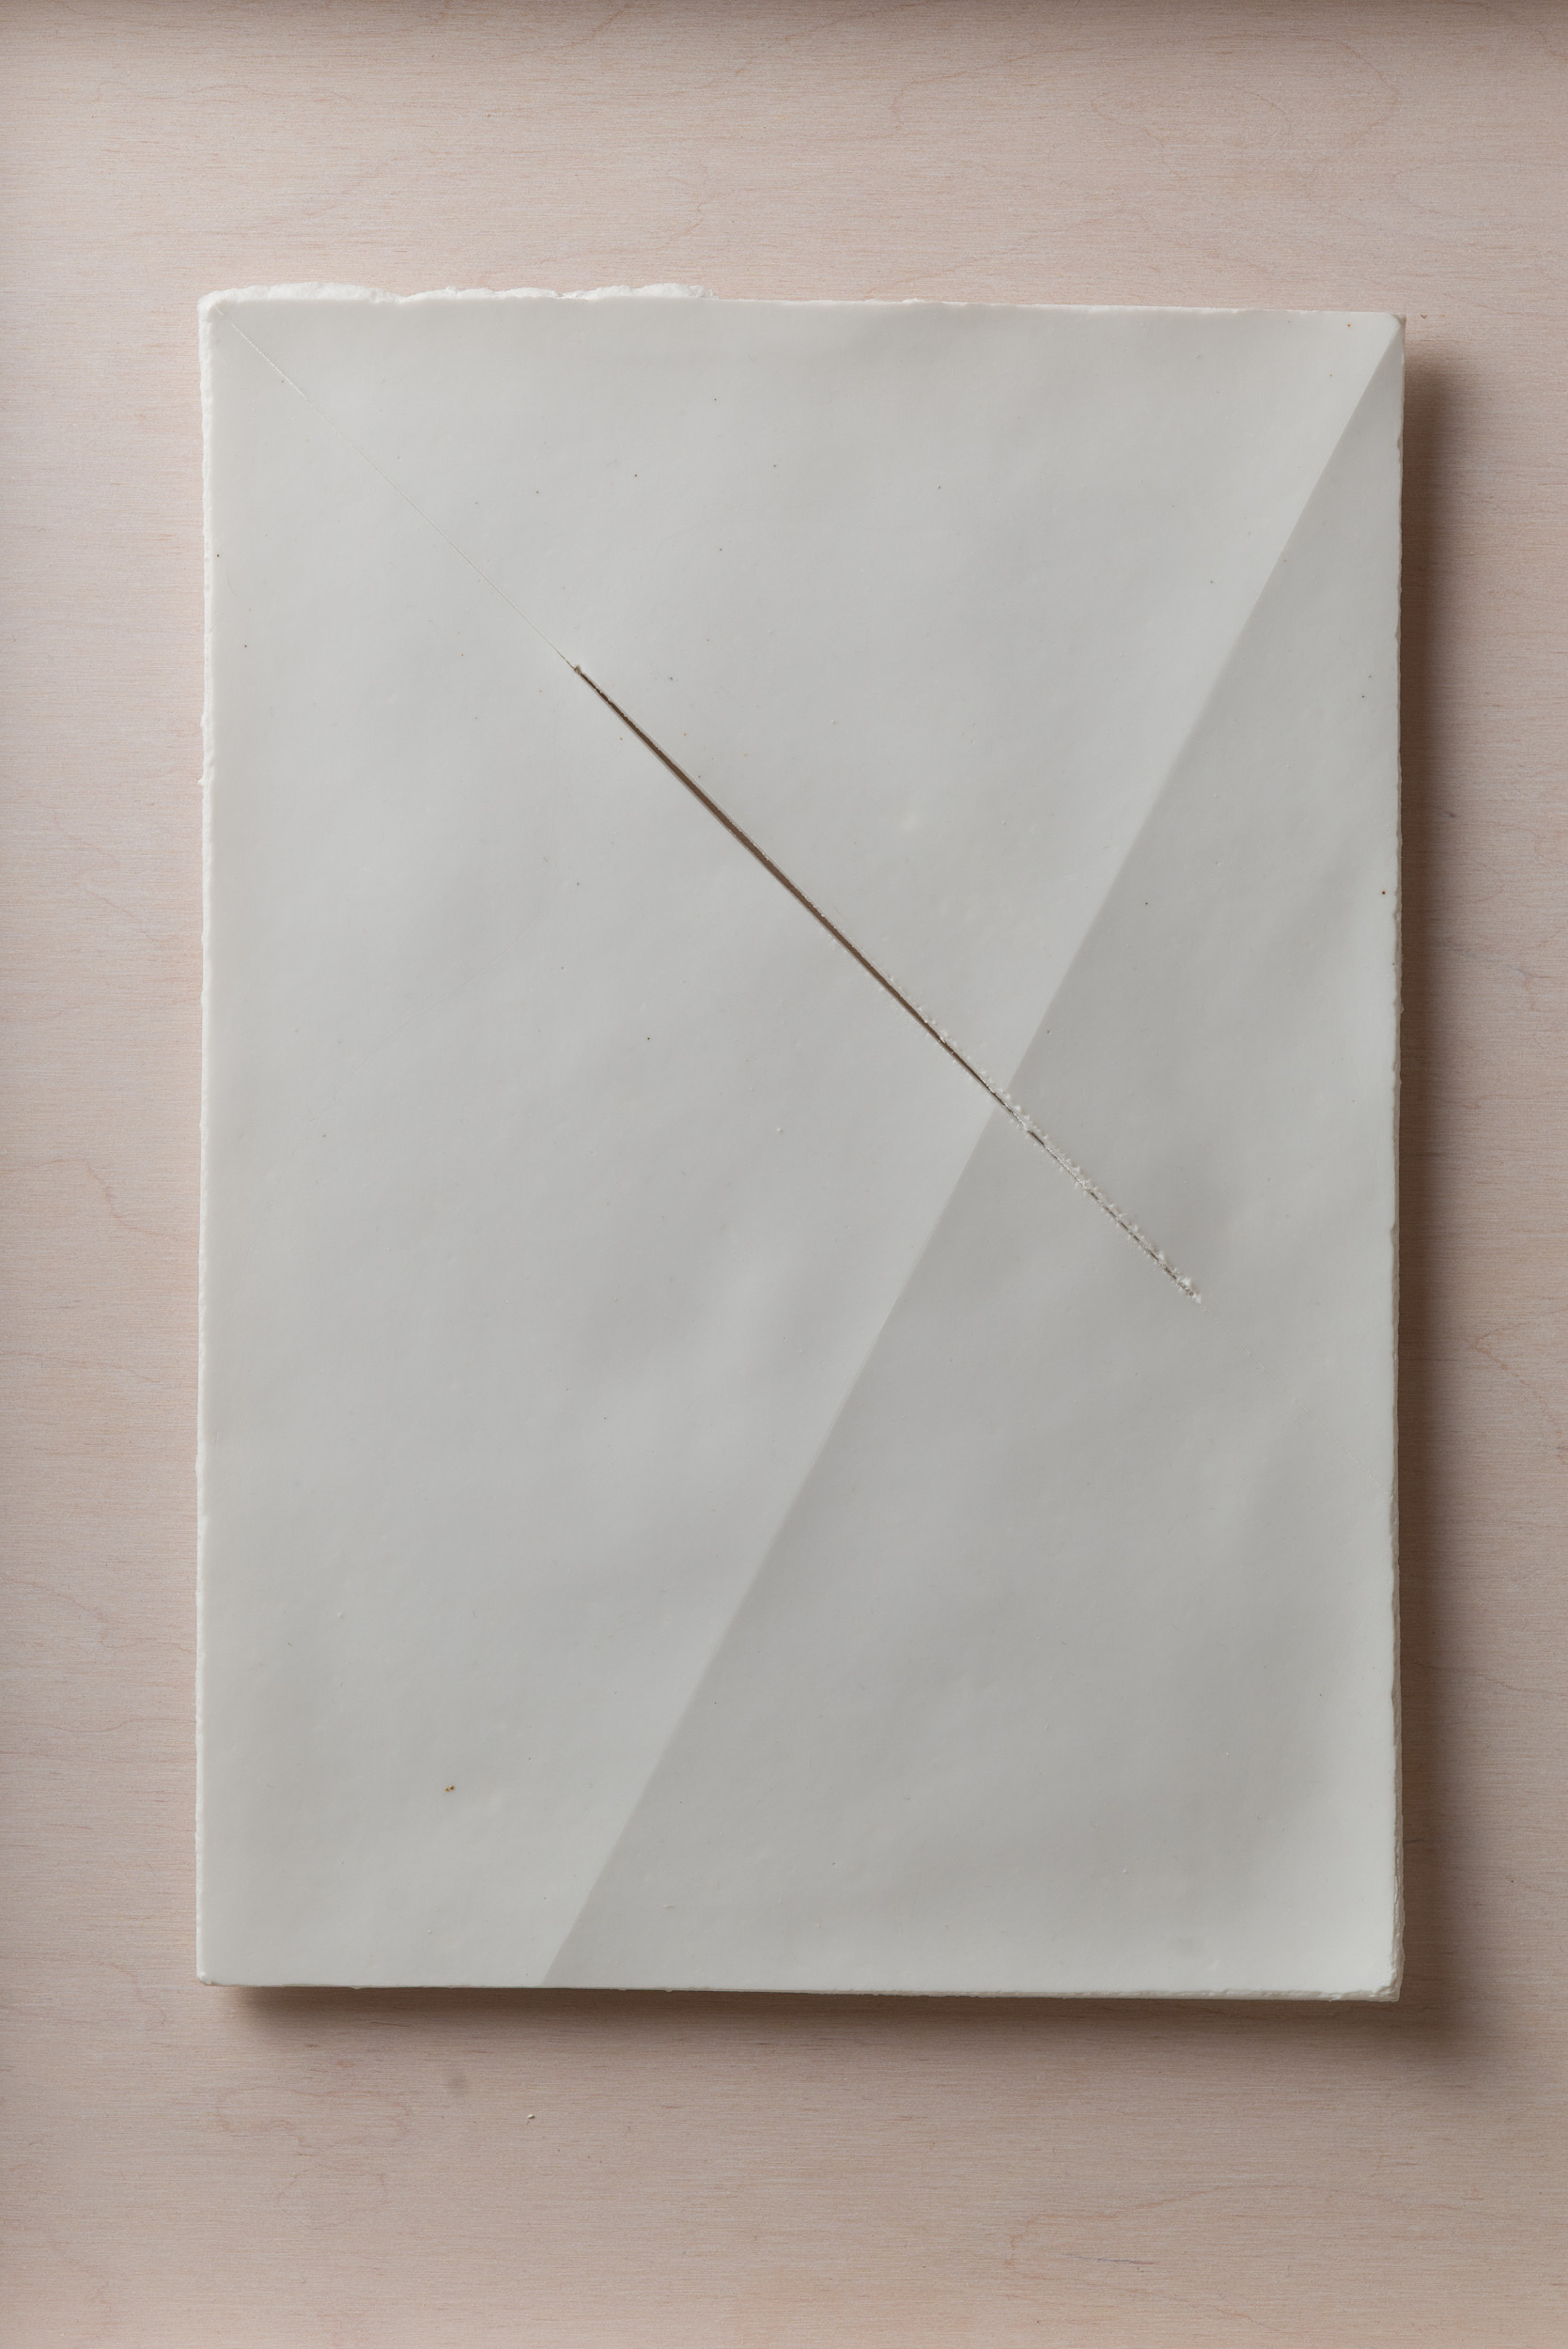 NÉMA Júlia: A4 II/II (2019) papírporcelán / paperporcelain 18,5 x 26 cm (31,6 x 38,6 x 3,5 cm) fotó: Czigány Ákos